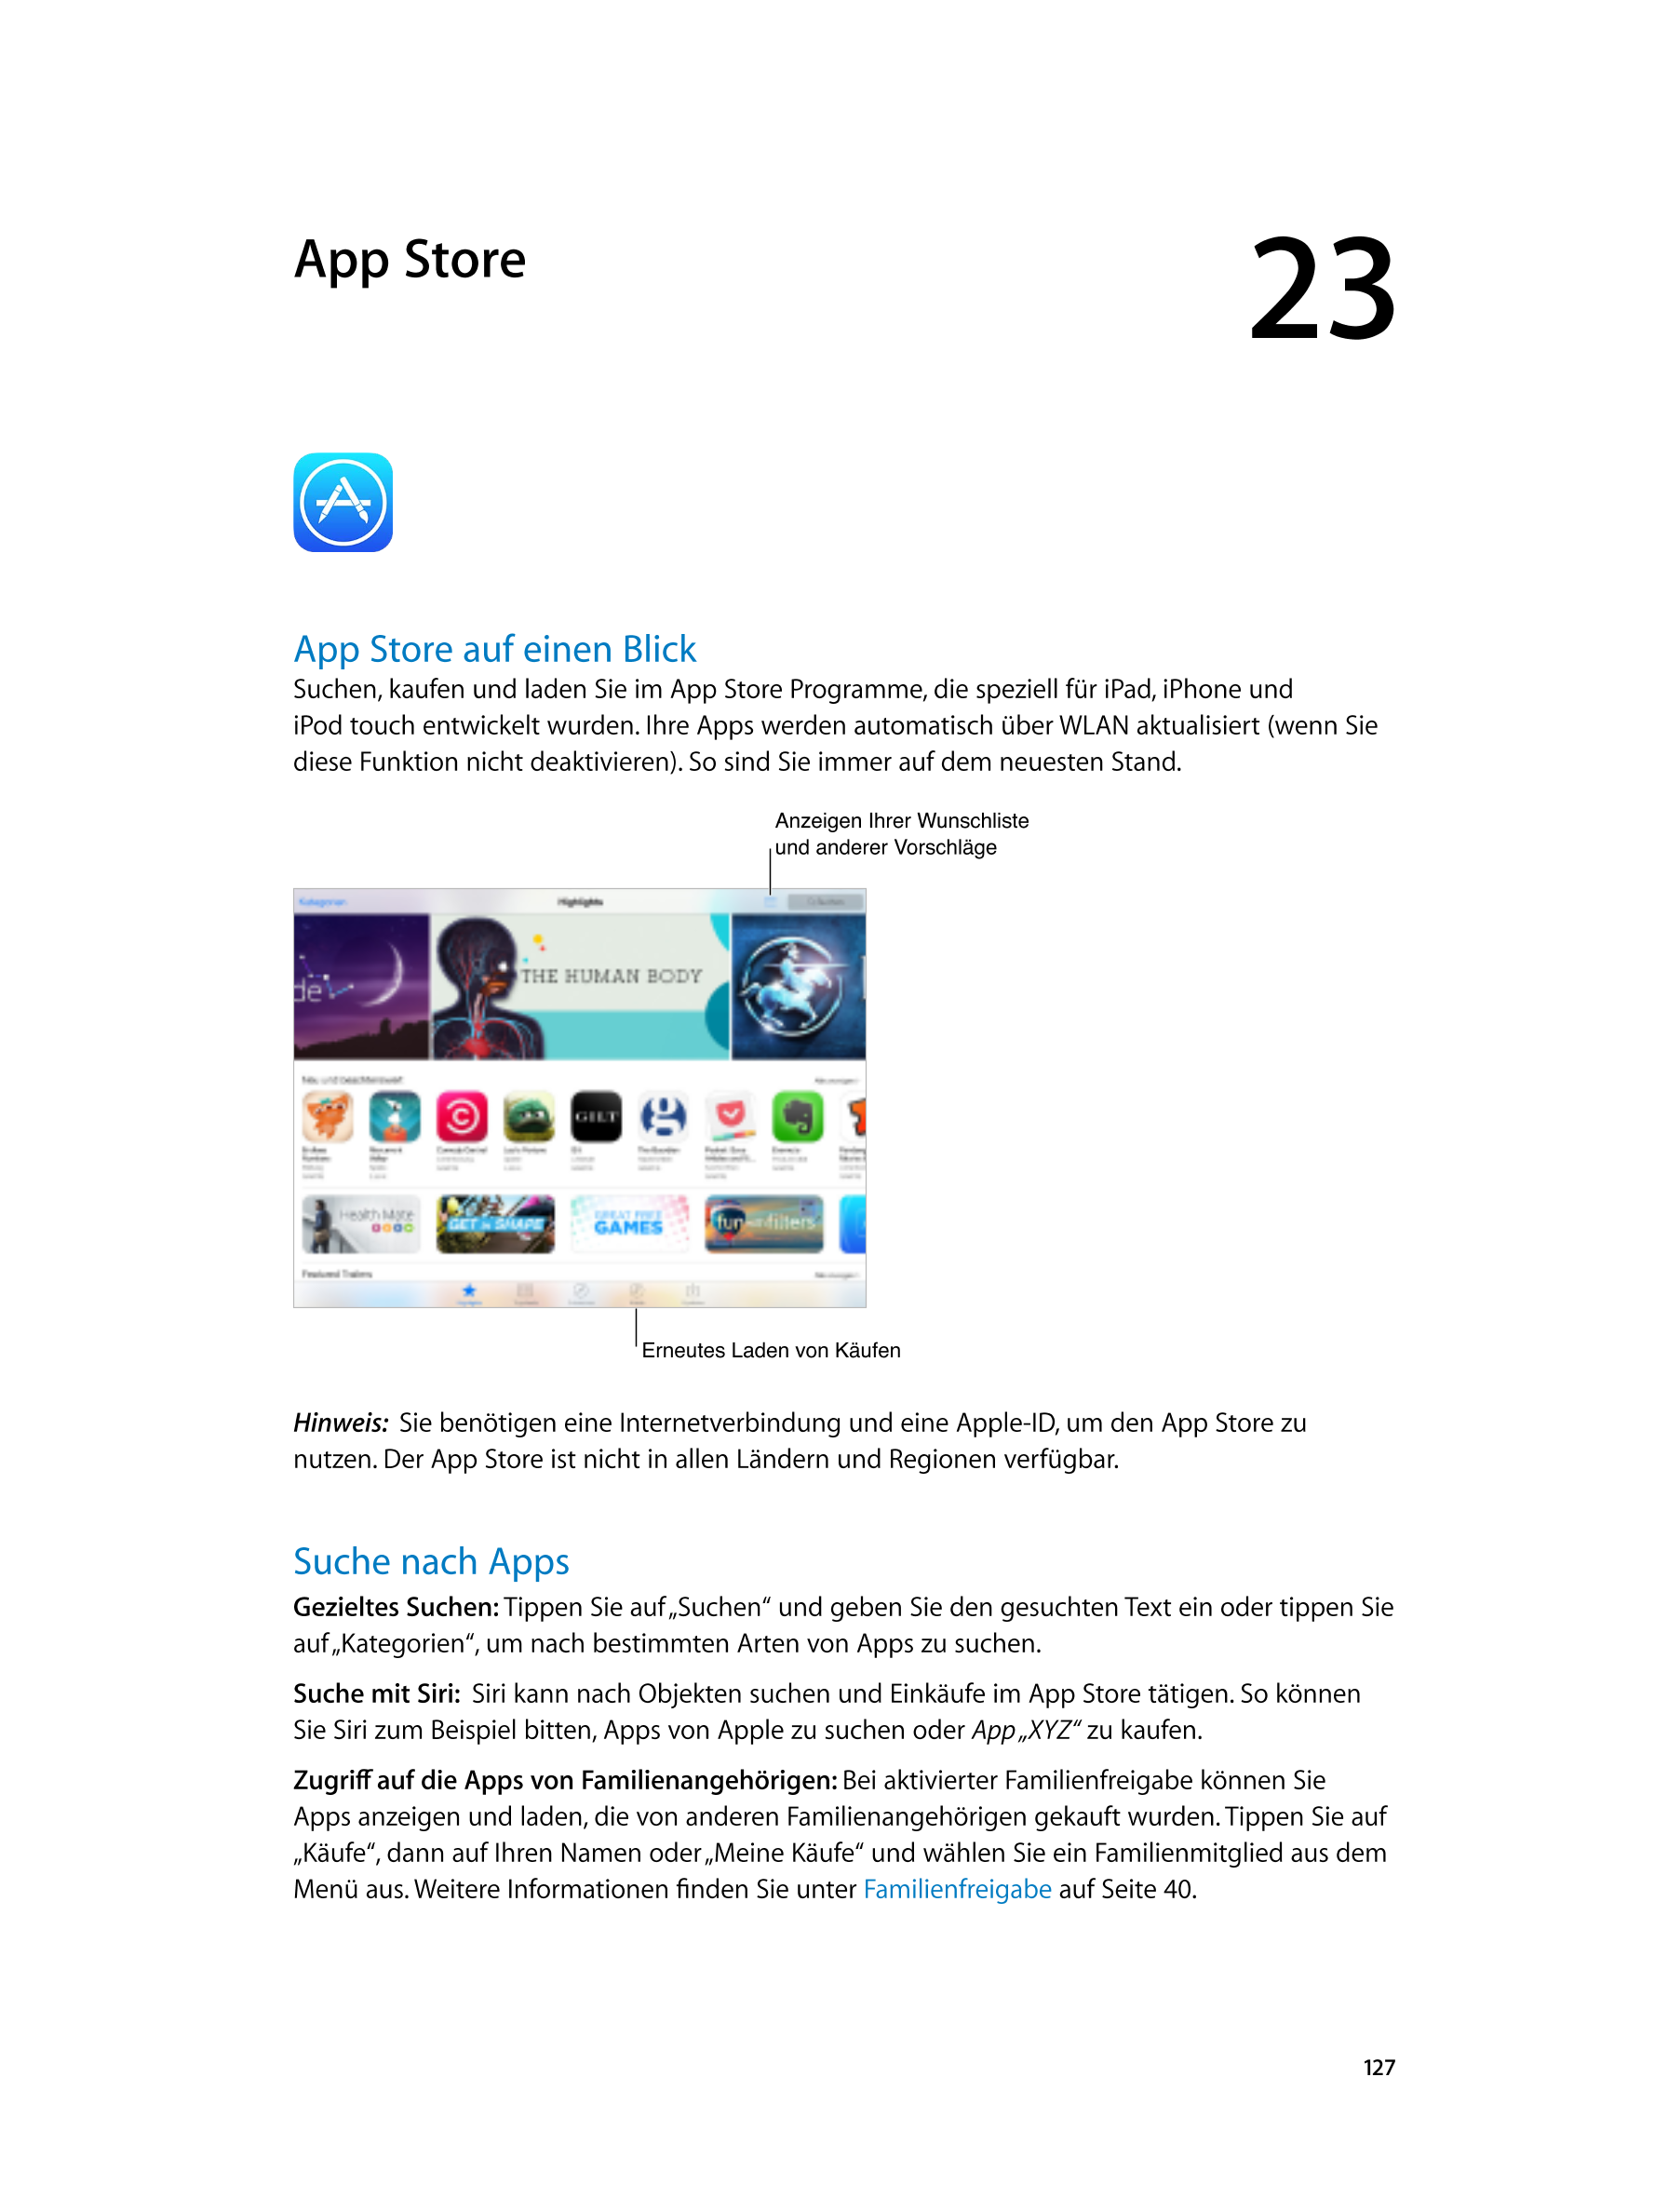  App Store 23  
App Store auf einen Blick
Suchen, kaufen und laden Sie im App Store Programme, die speziell für iPad, iPhone und